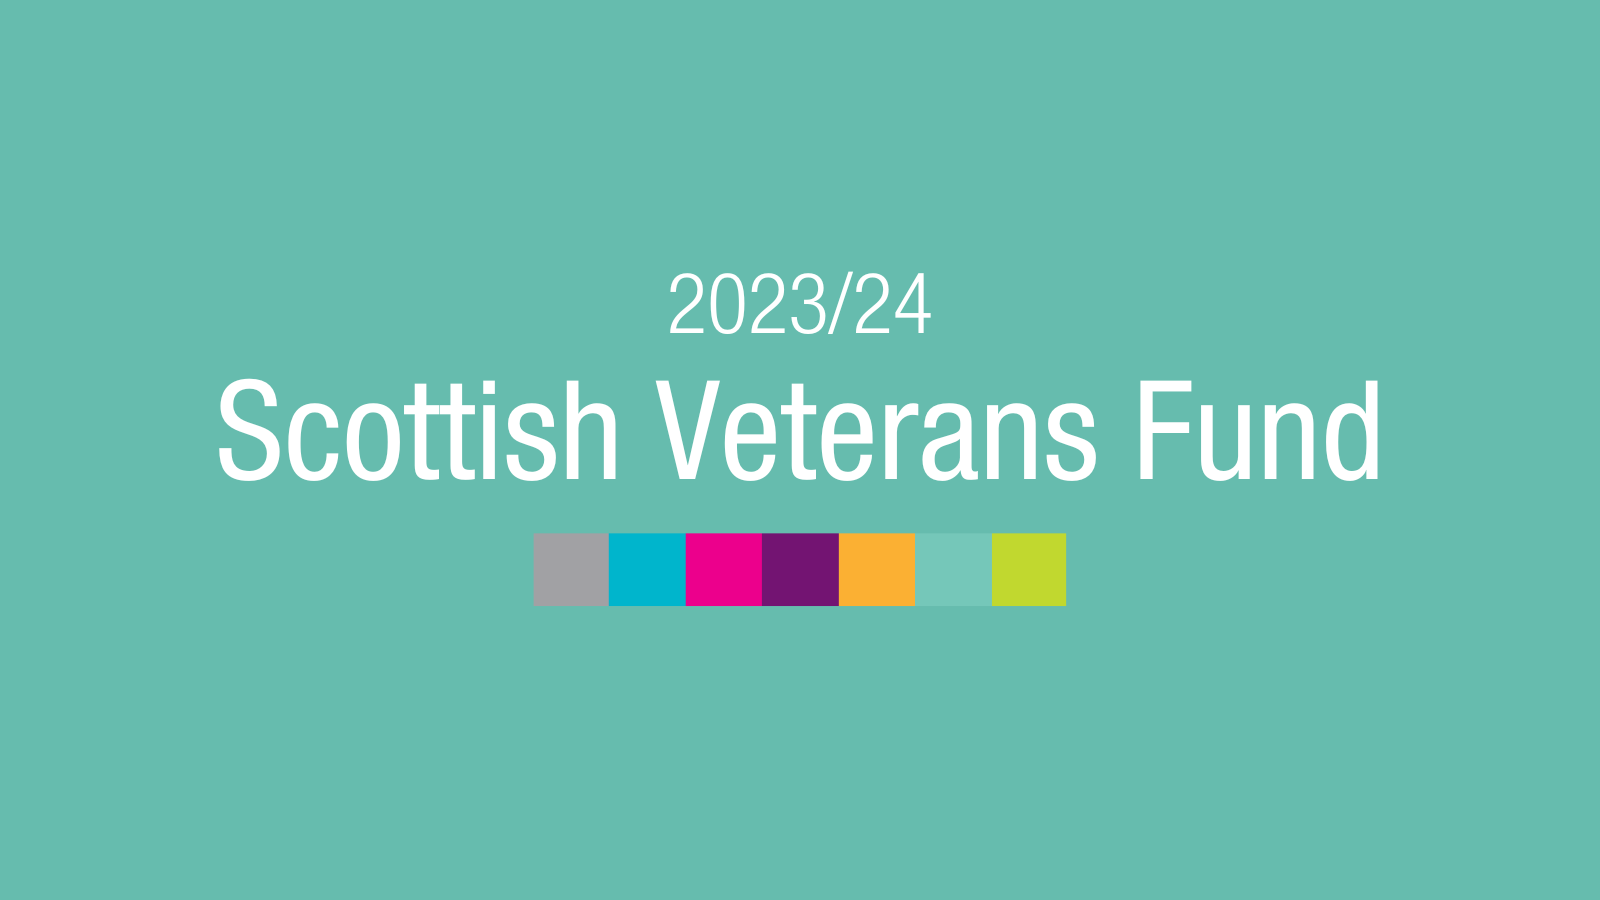 Scottish Veterans Fund 2023/24 now open